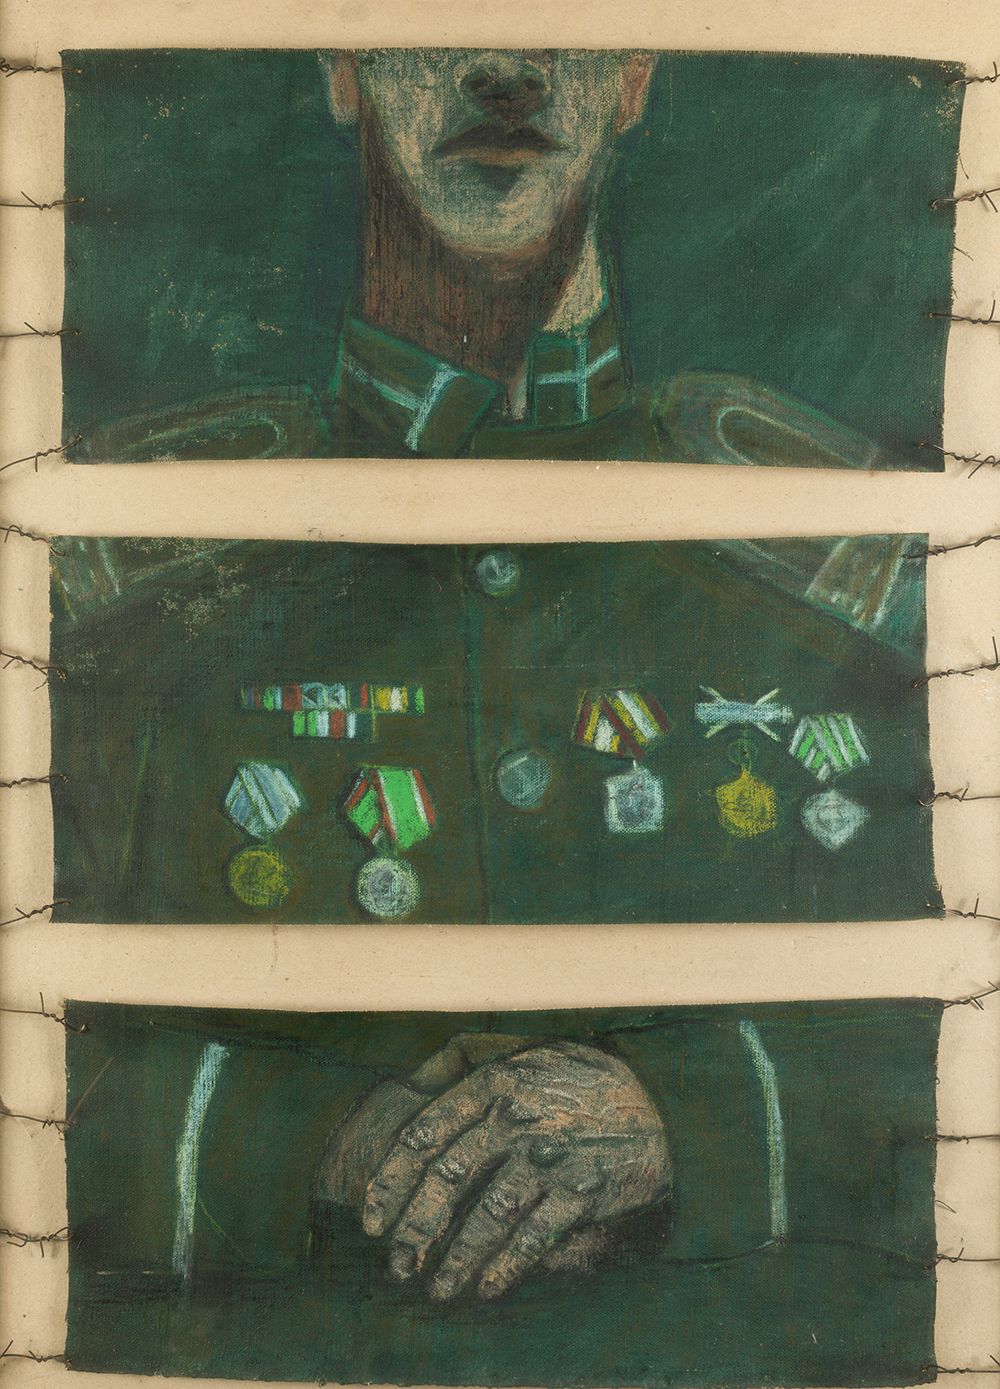 ESCUELA CUBANA (20th century) "Military" . 88 x 68 cm. Öl auf Leinwand, Keilrahm&hellip;